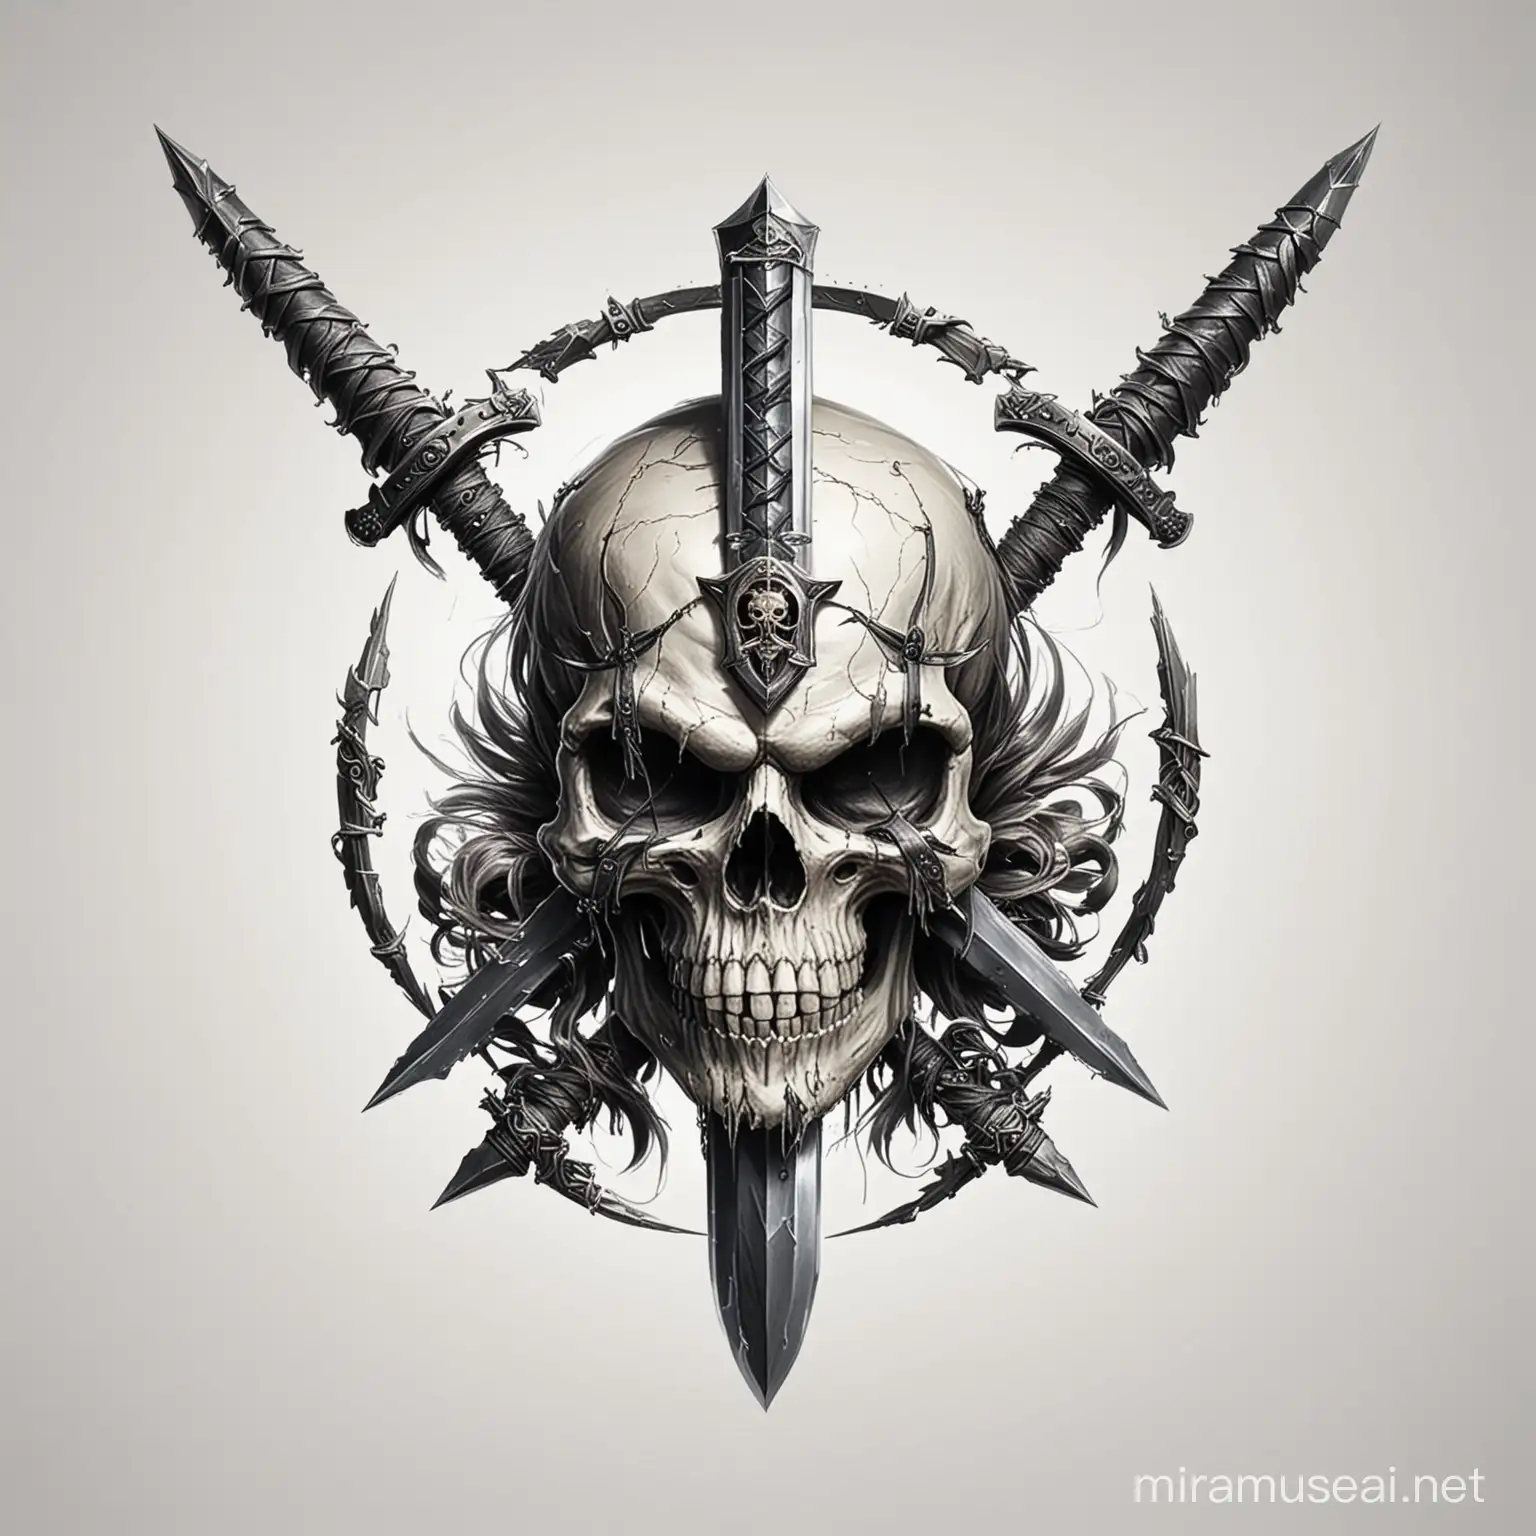 придумай логотип с черепом и мечами на белом фоне